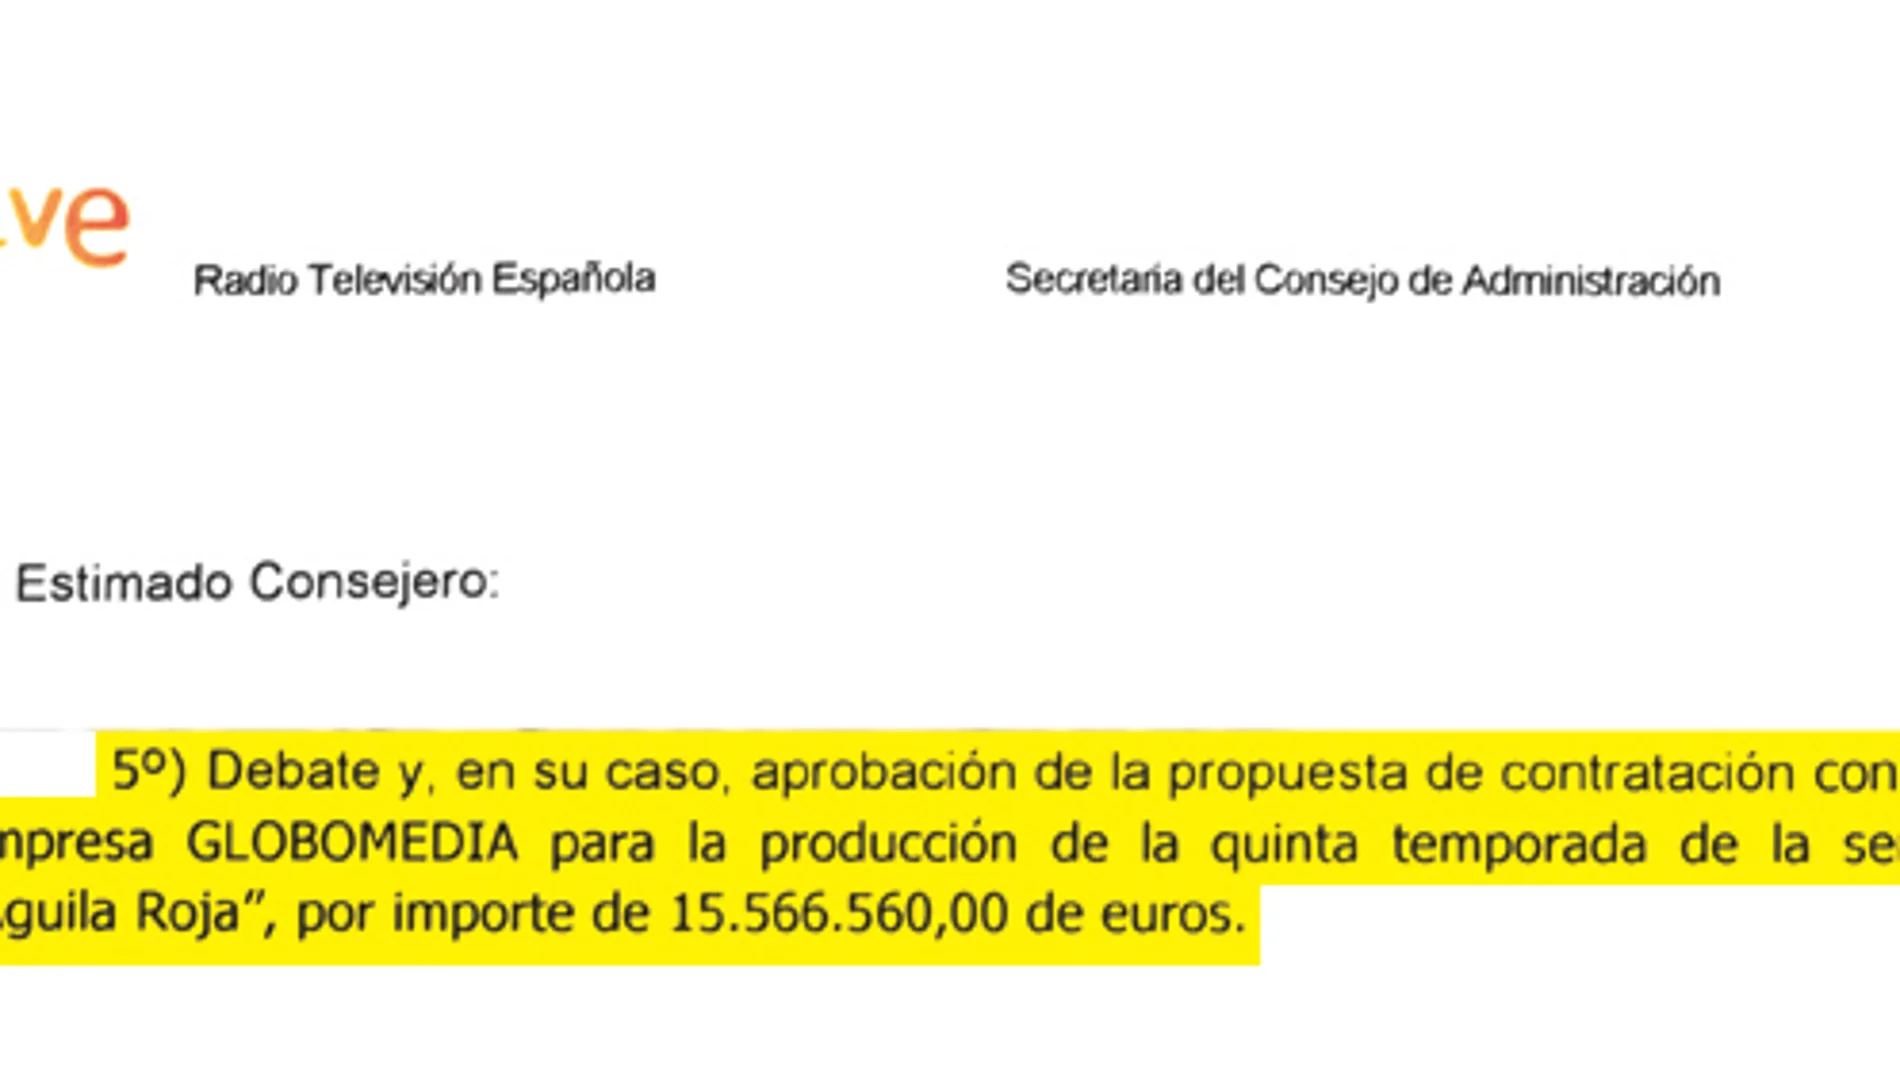 El Consejo de Administración aprobó ayer un pago a Globomedia por valor de 15,56 millones de euros por la próxima temporada de «Águila roja», es decir, unos 915.000 por capítulo